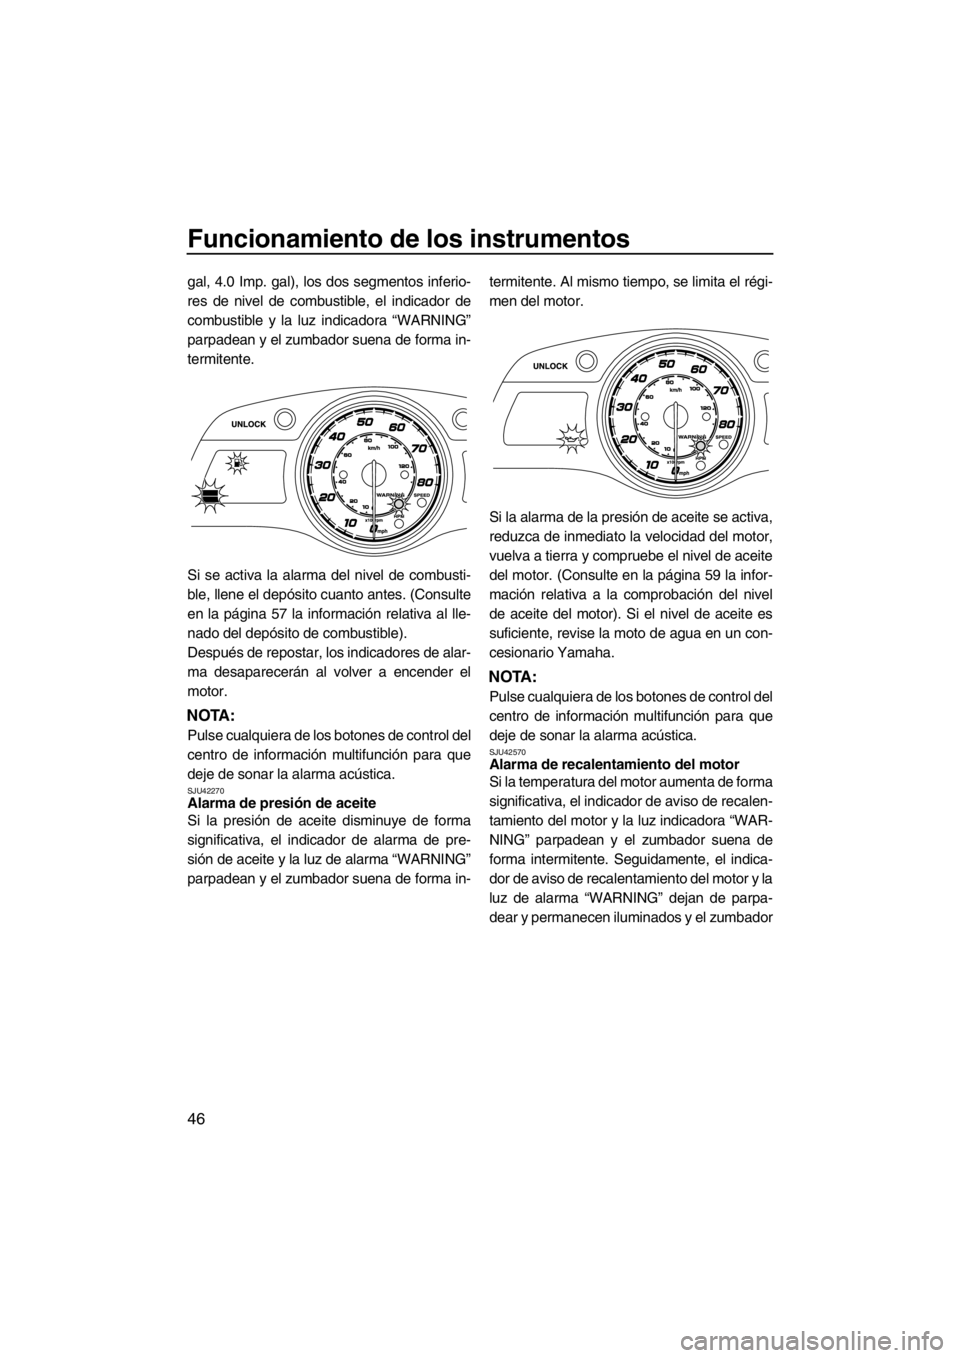 YAMAHA FX HO CRUISER 2012  Manuale de Empleo (in Spanish) Funcionamiento de los instrumentos
46
gal, 4.0 Imp. gal), los dos segmentos inferio-
res de nivel de combustible, el indicador de
combustible y la luz indicadora “WARNING”
parpadean y el zumbador 